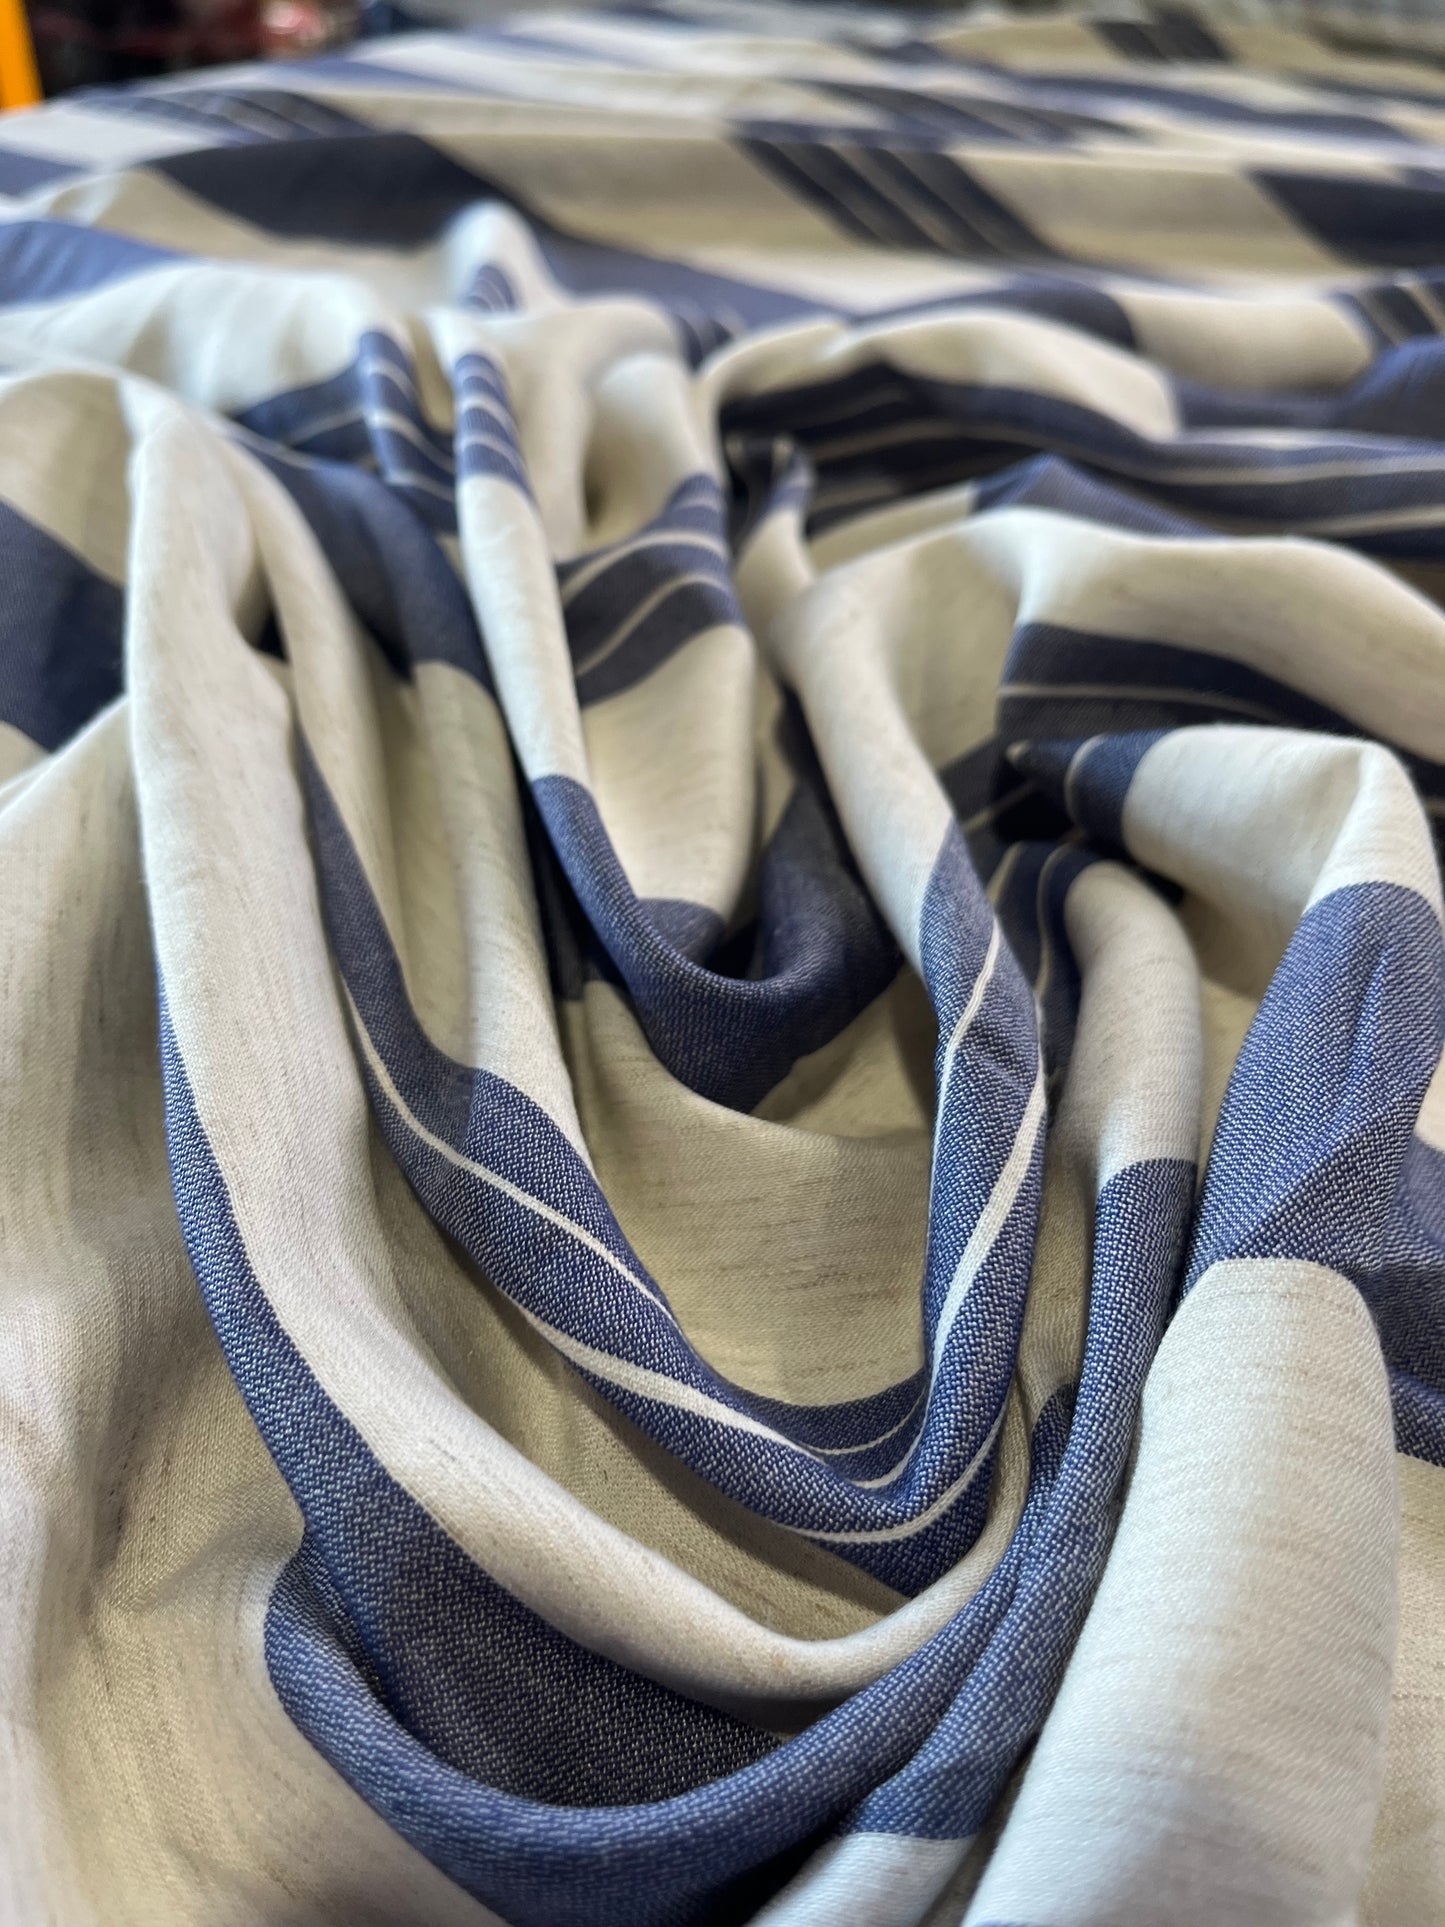 Pisa 048 woven stripes indigo/white with linen